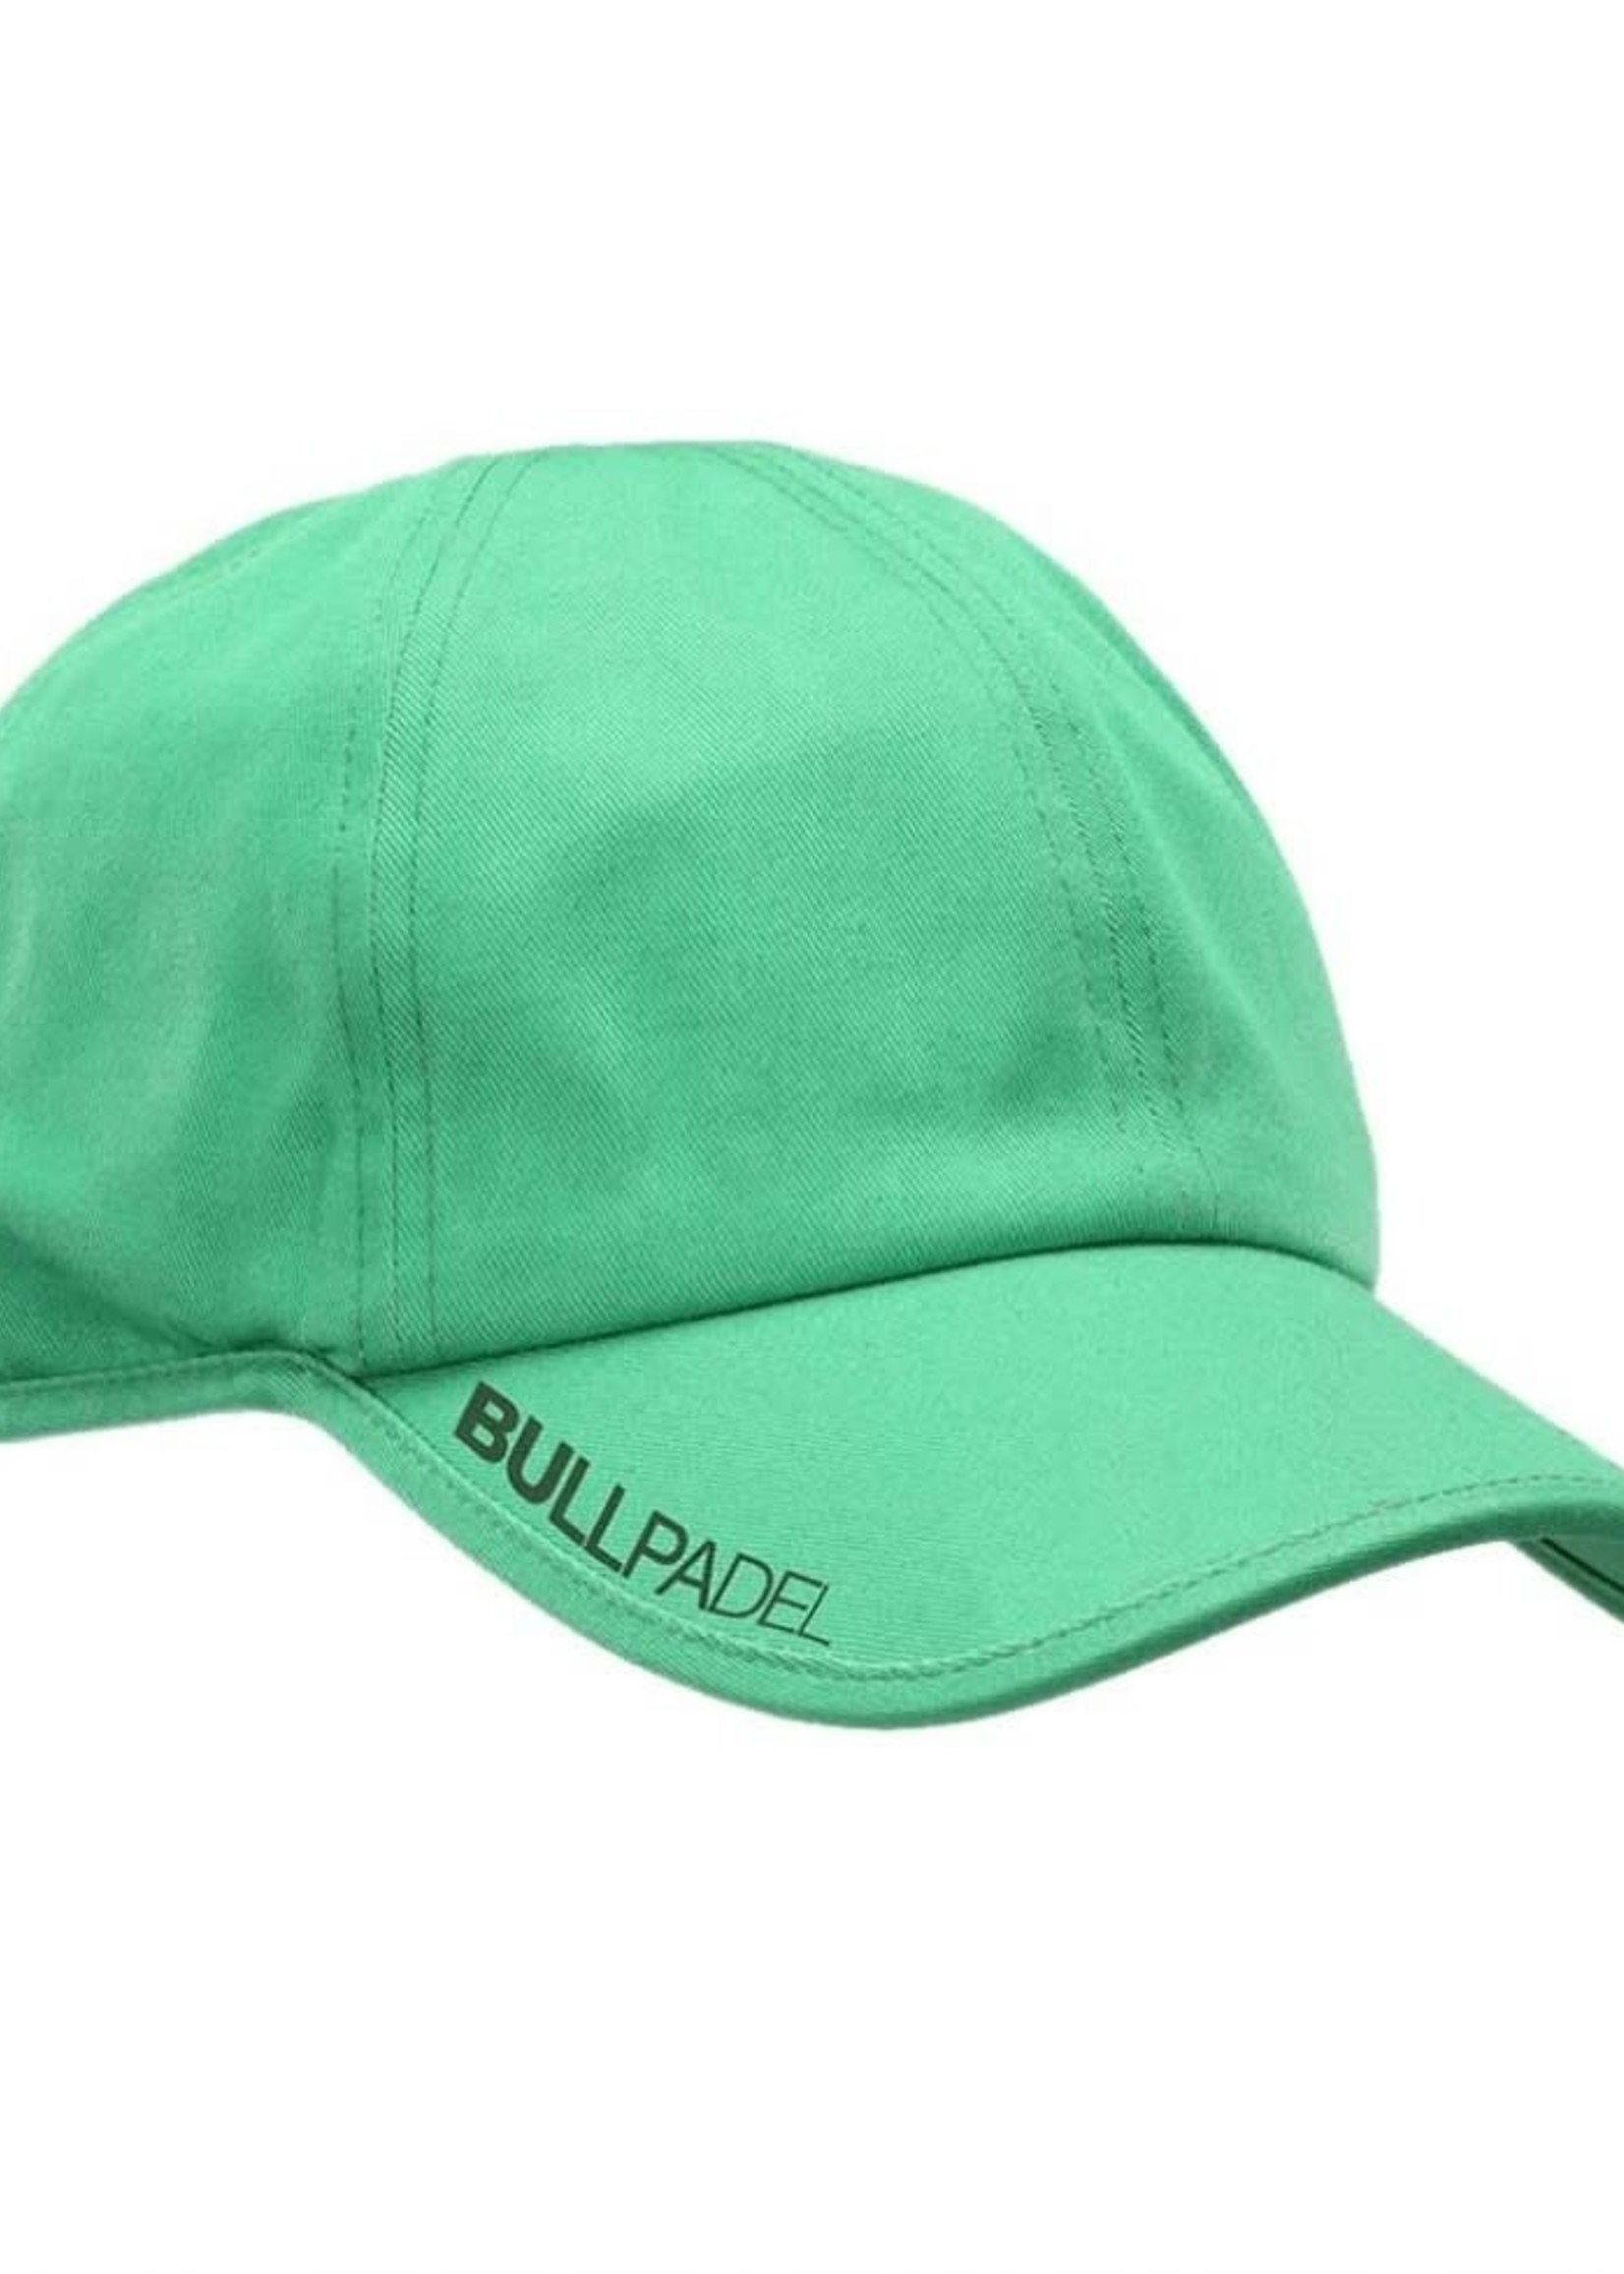 BULLPADEL BULLPADEL CAP BPG 224 074- GREEN